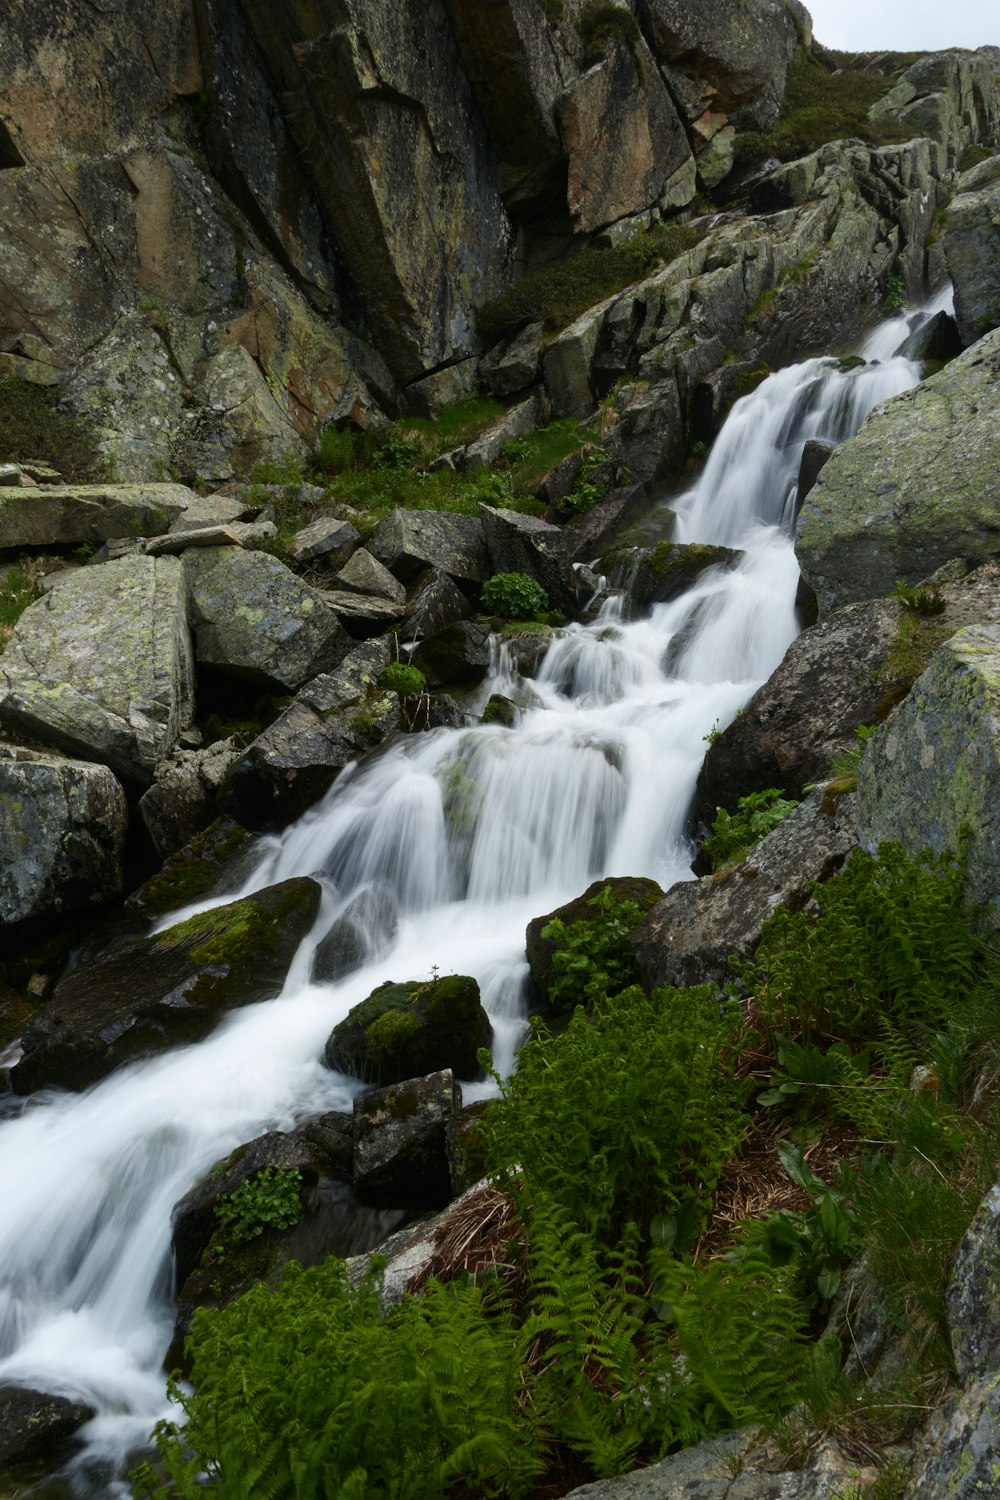 a stream of water running down a rocky hillside